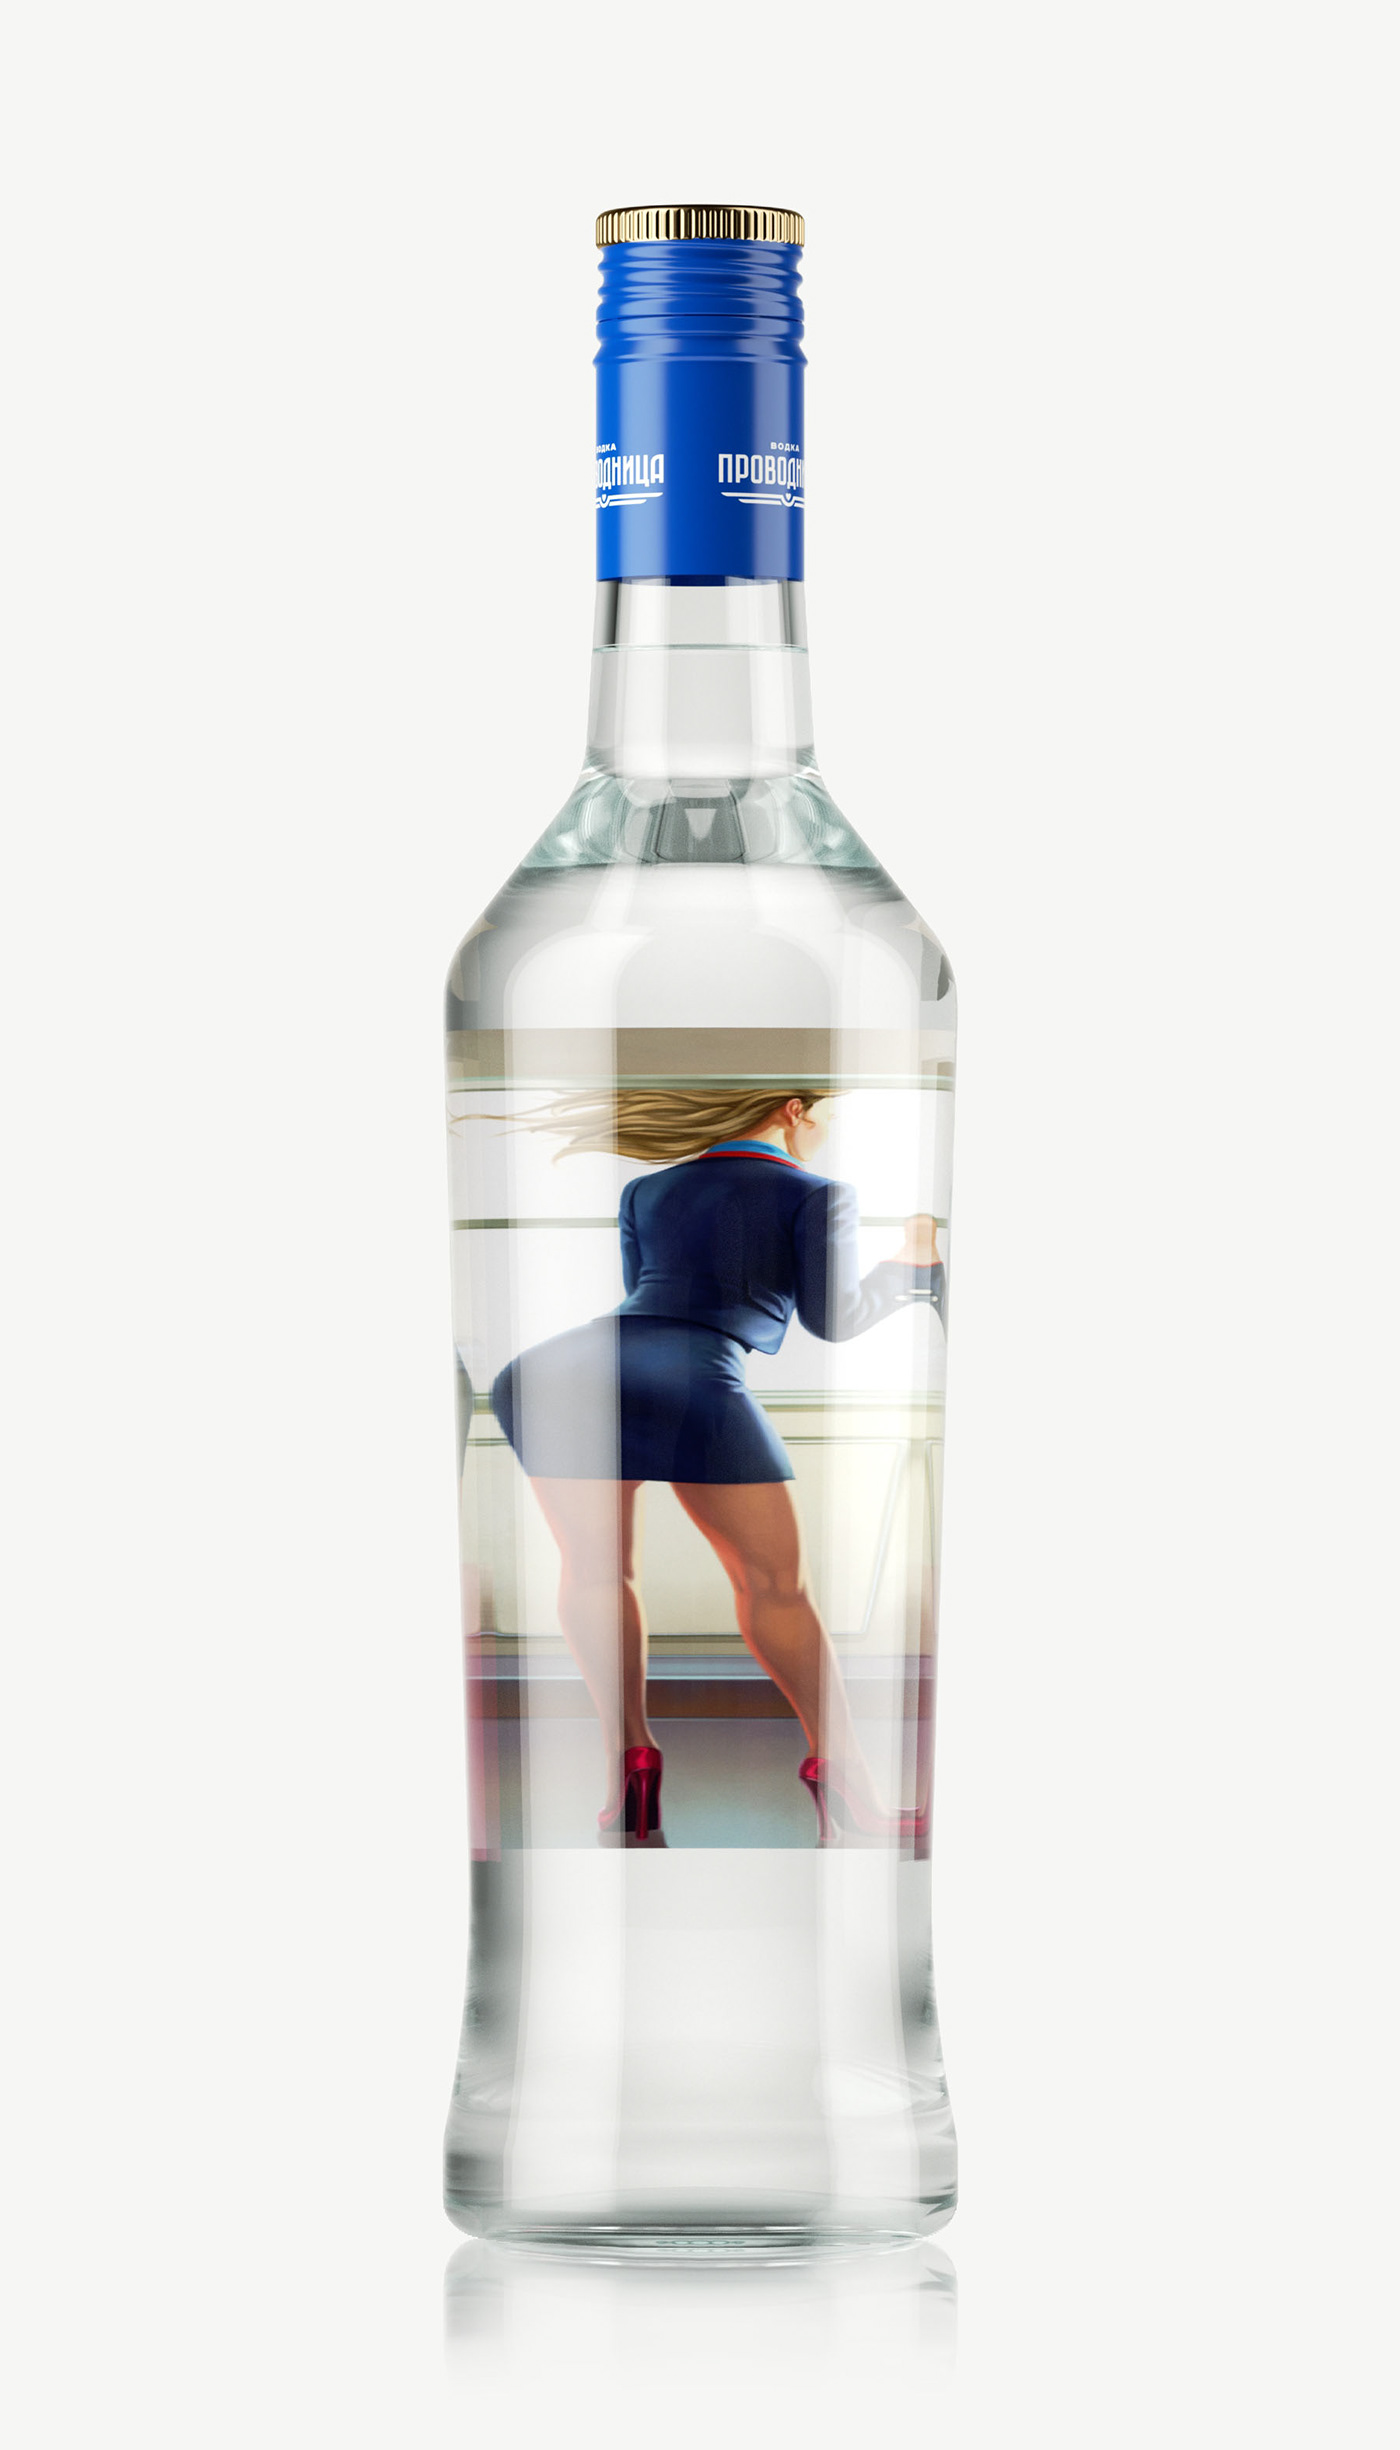 Vodka Packaging design uniqa brand водка упаковка дизайн бренд